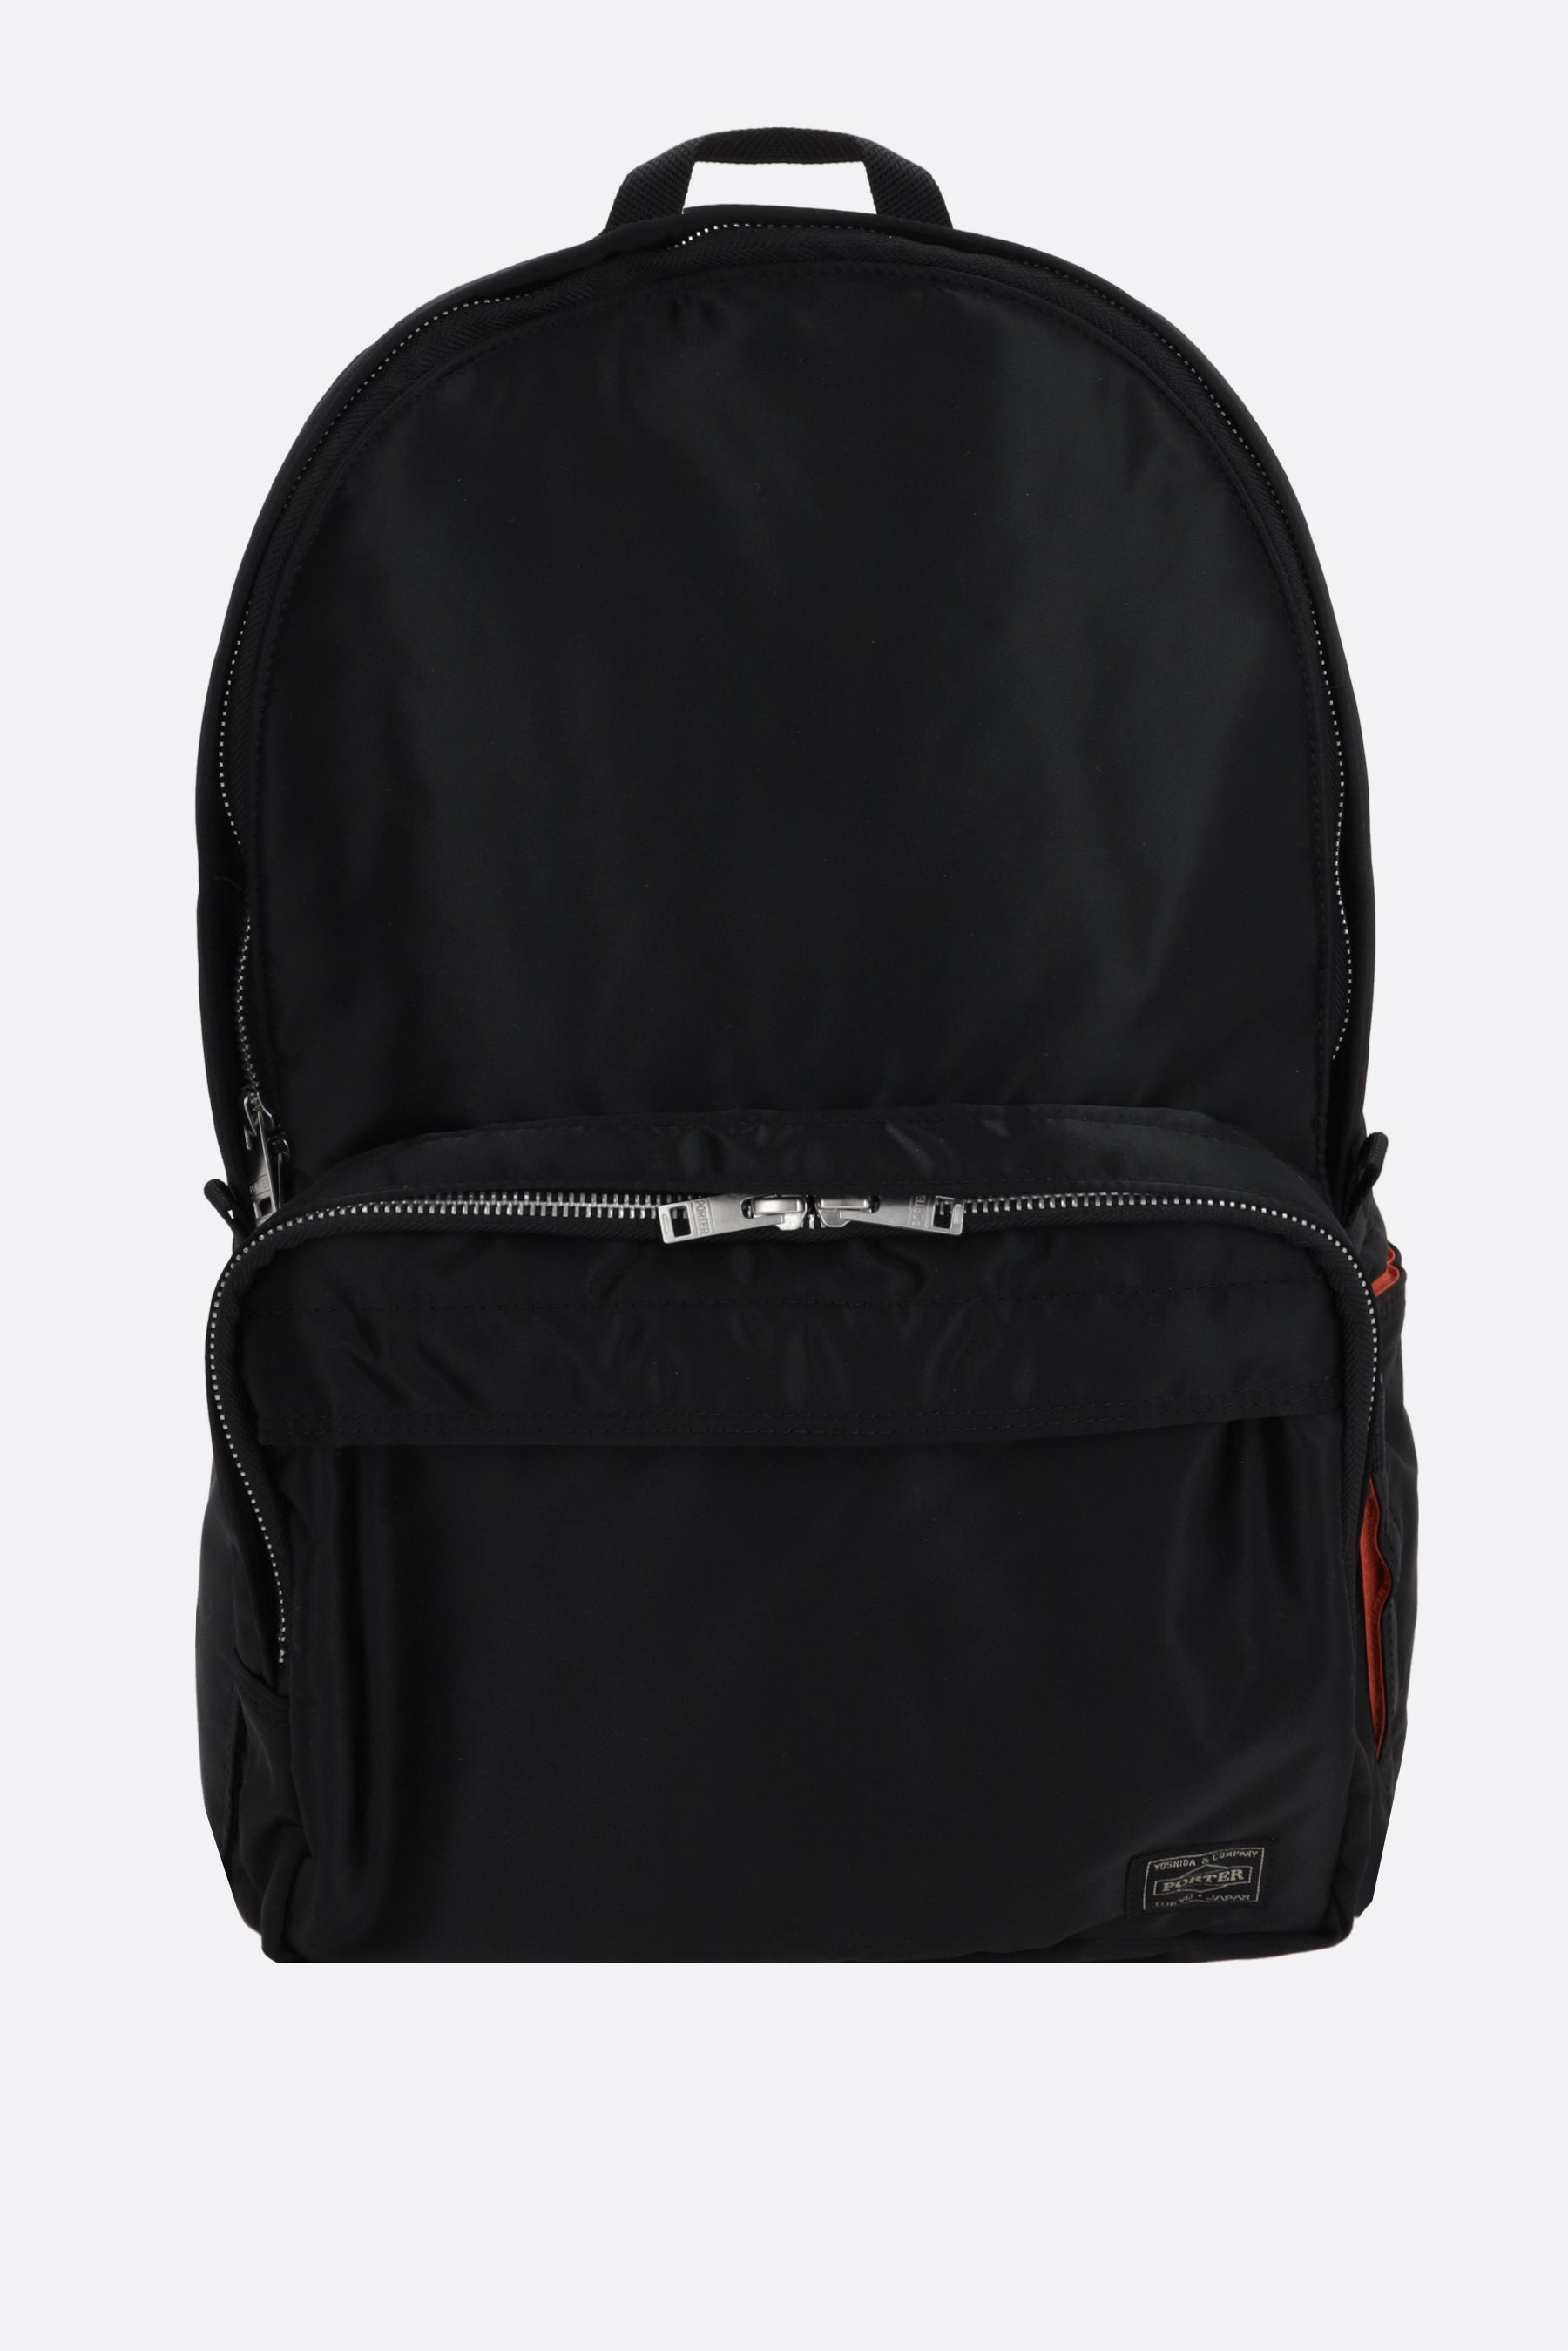 Tanker nylon backpack